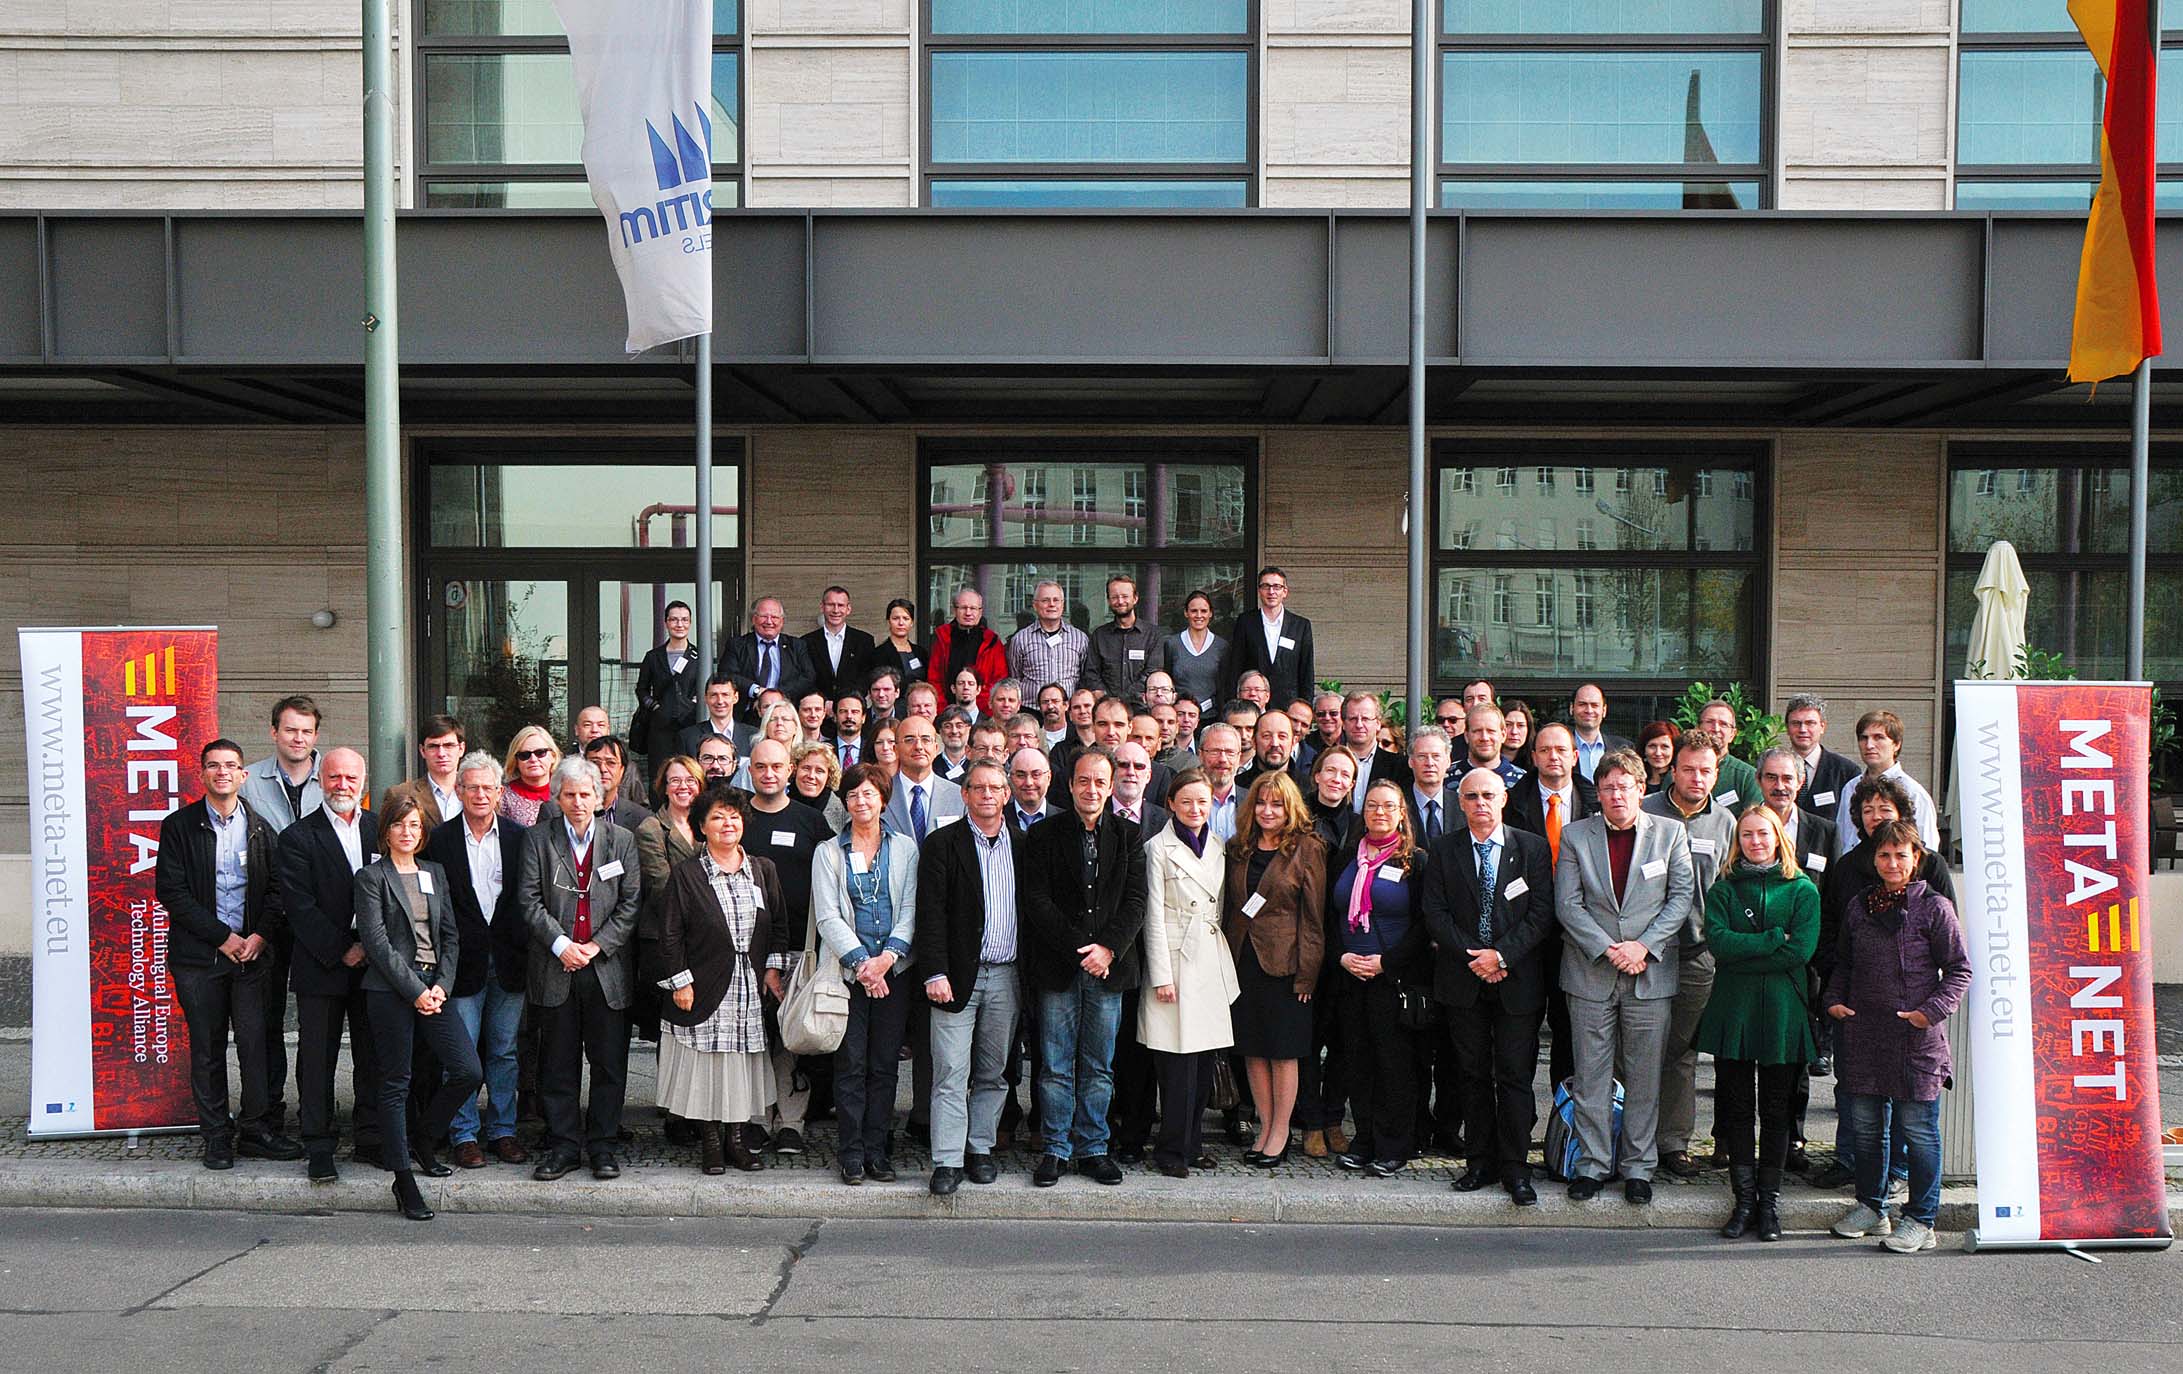 Omtrent 100 eksperter innen språkteknologi representanter for landene og språkene i META-NET sluttførte diskusjonen om nøkkelresultatene og -konklusjonene i hvitbokserien på et META-NET-møte i